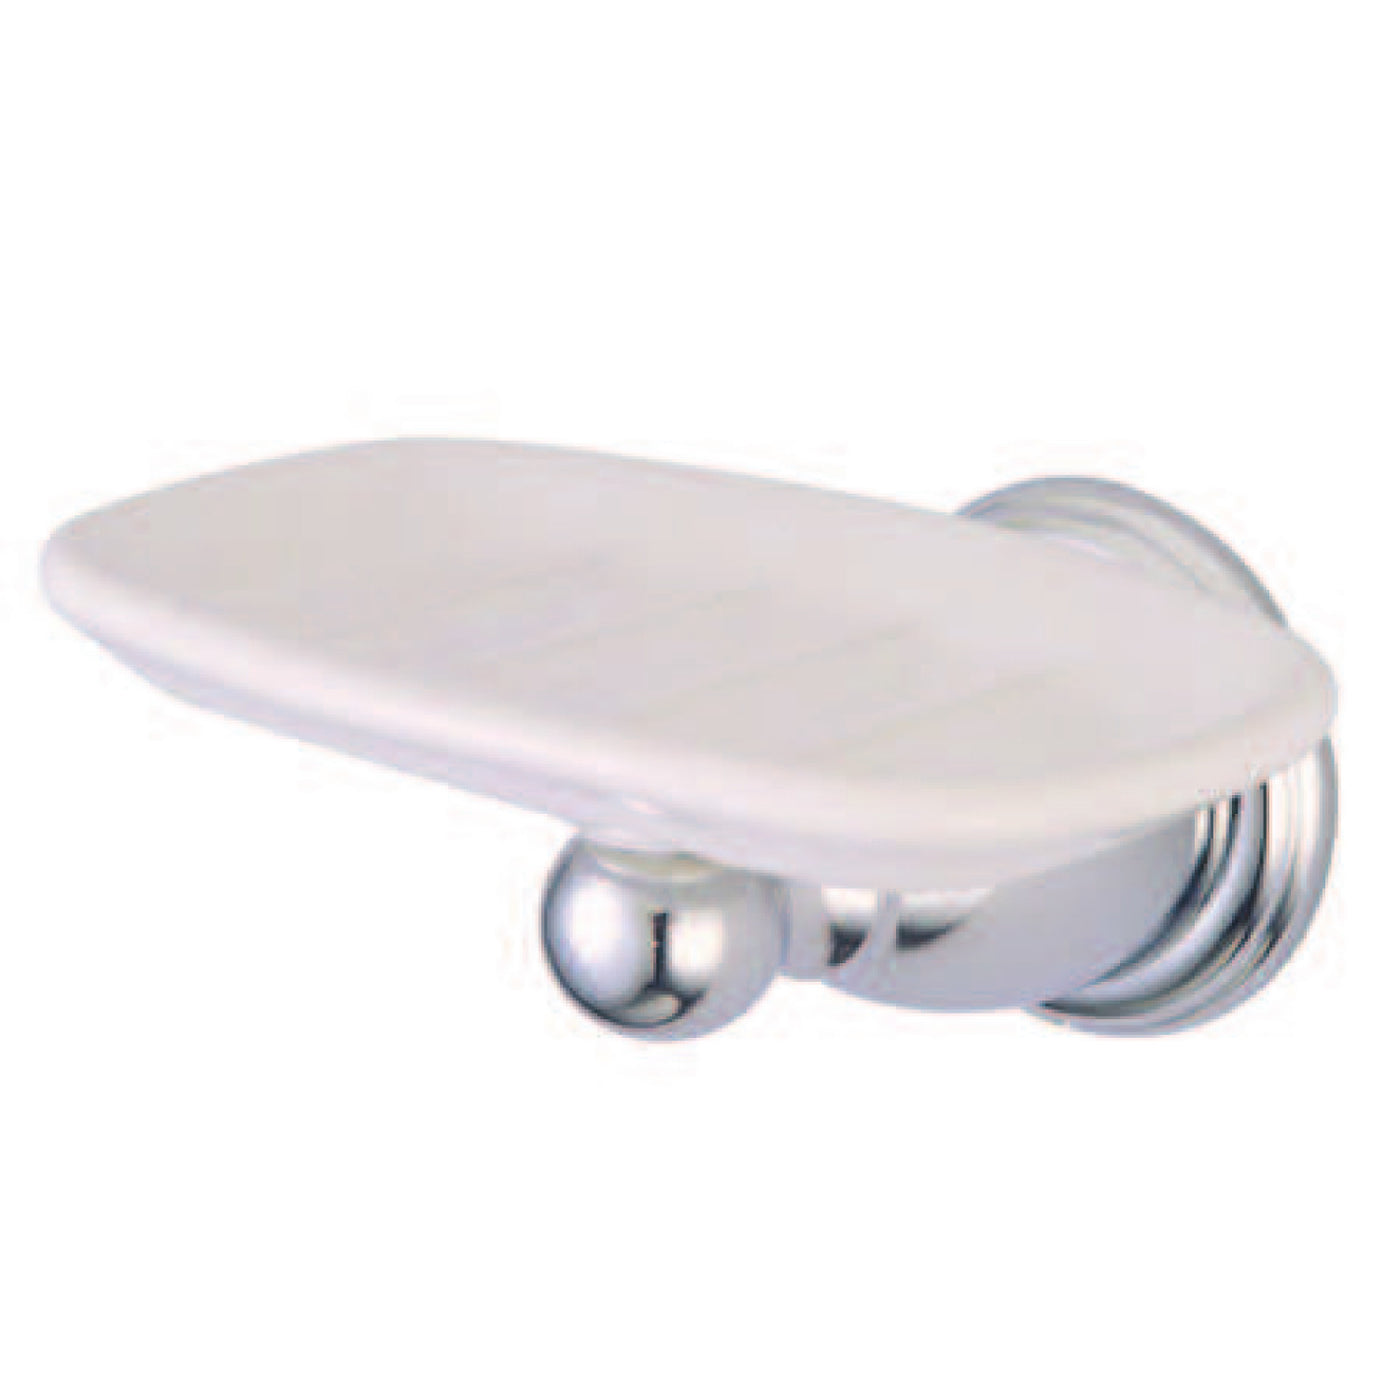 Elements of Design EBA1755C Wall-Mount Soap Dish Holder, Polished Chrome